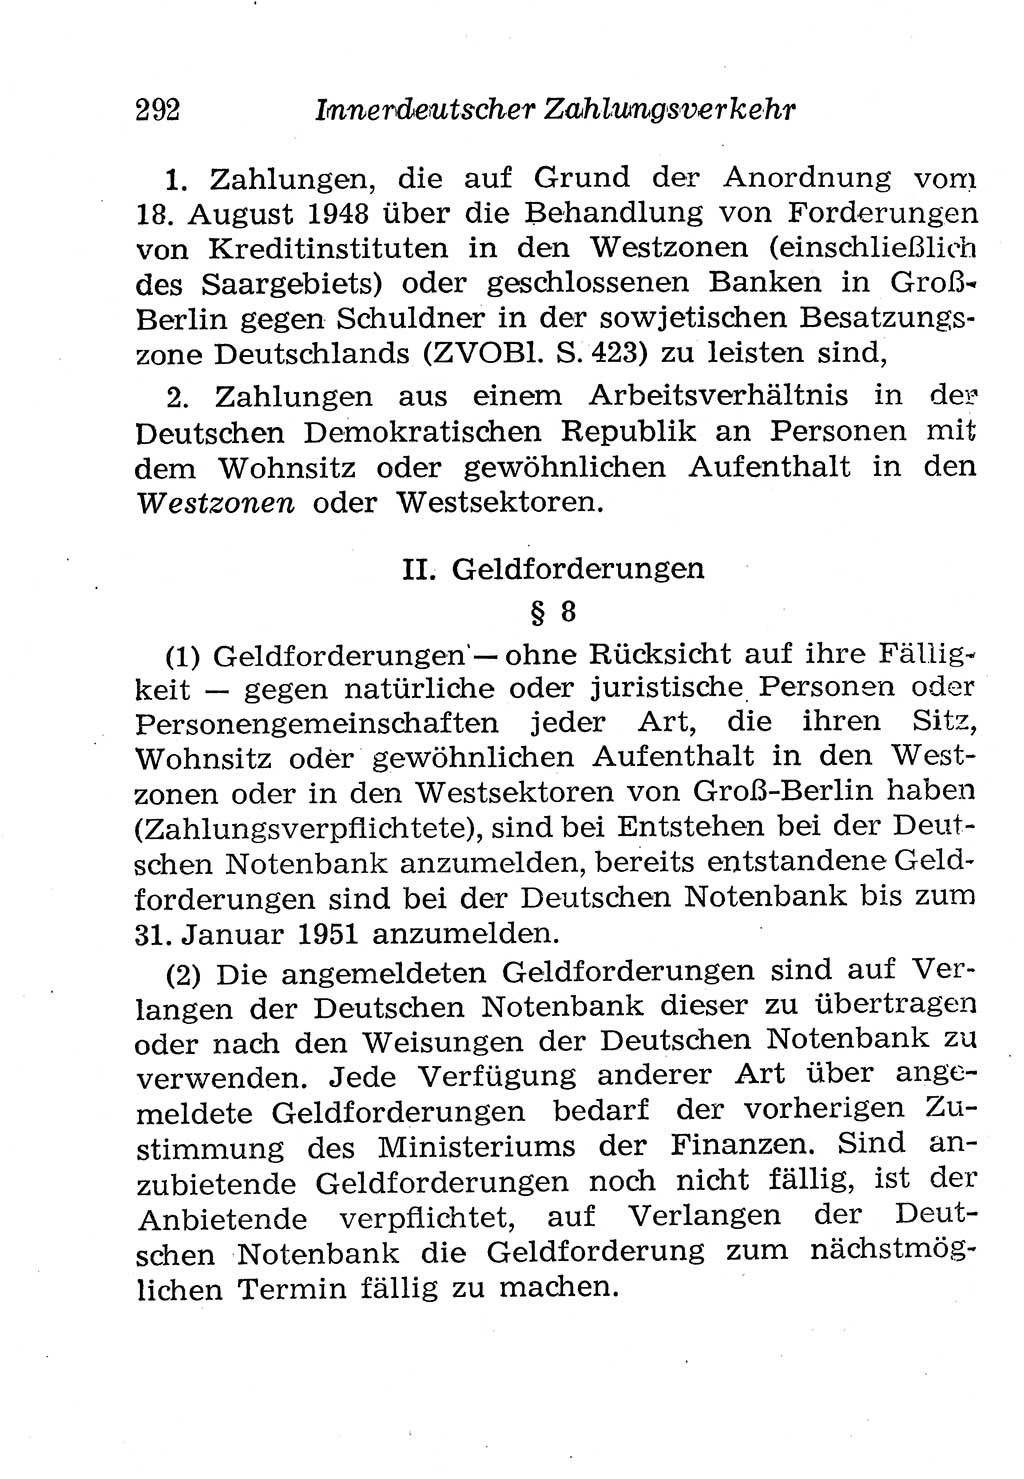 Strafgesetzbuch (StGB) und andere Strafgesetze [Deutsche Demokratische Republik (DDR)] 1958, Seite 292 (StGB Strafges. DDR 1958, S. 292)